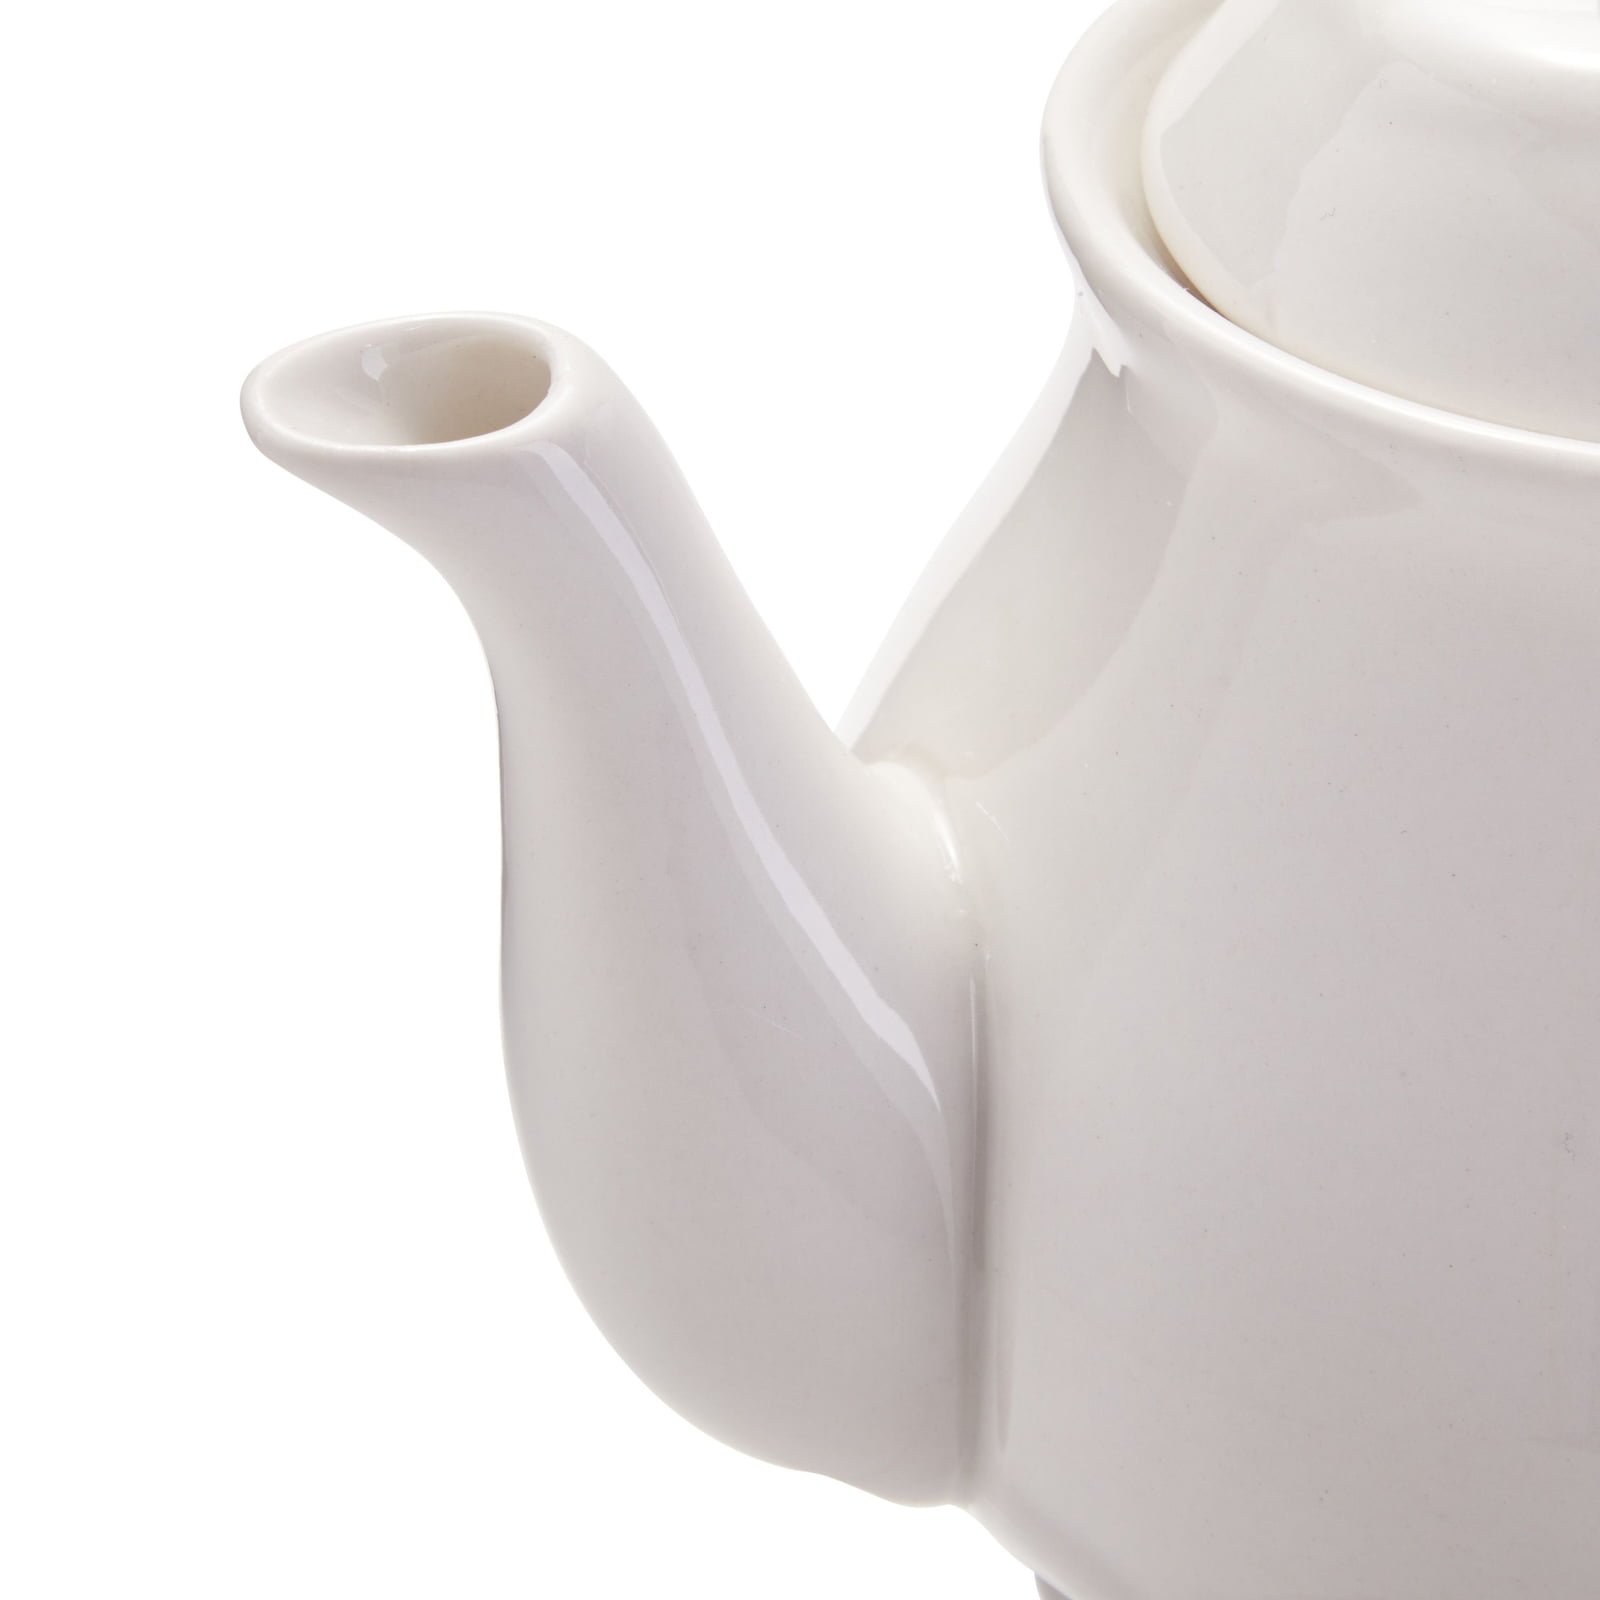 Teacups and Teapots White/black/gray Handmade Grocery Bag/Rag Dispenser 